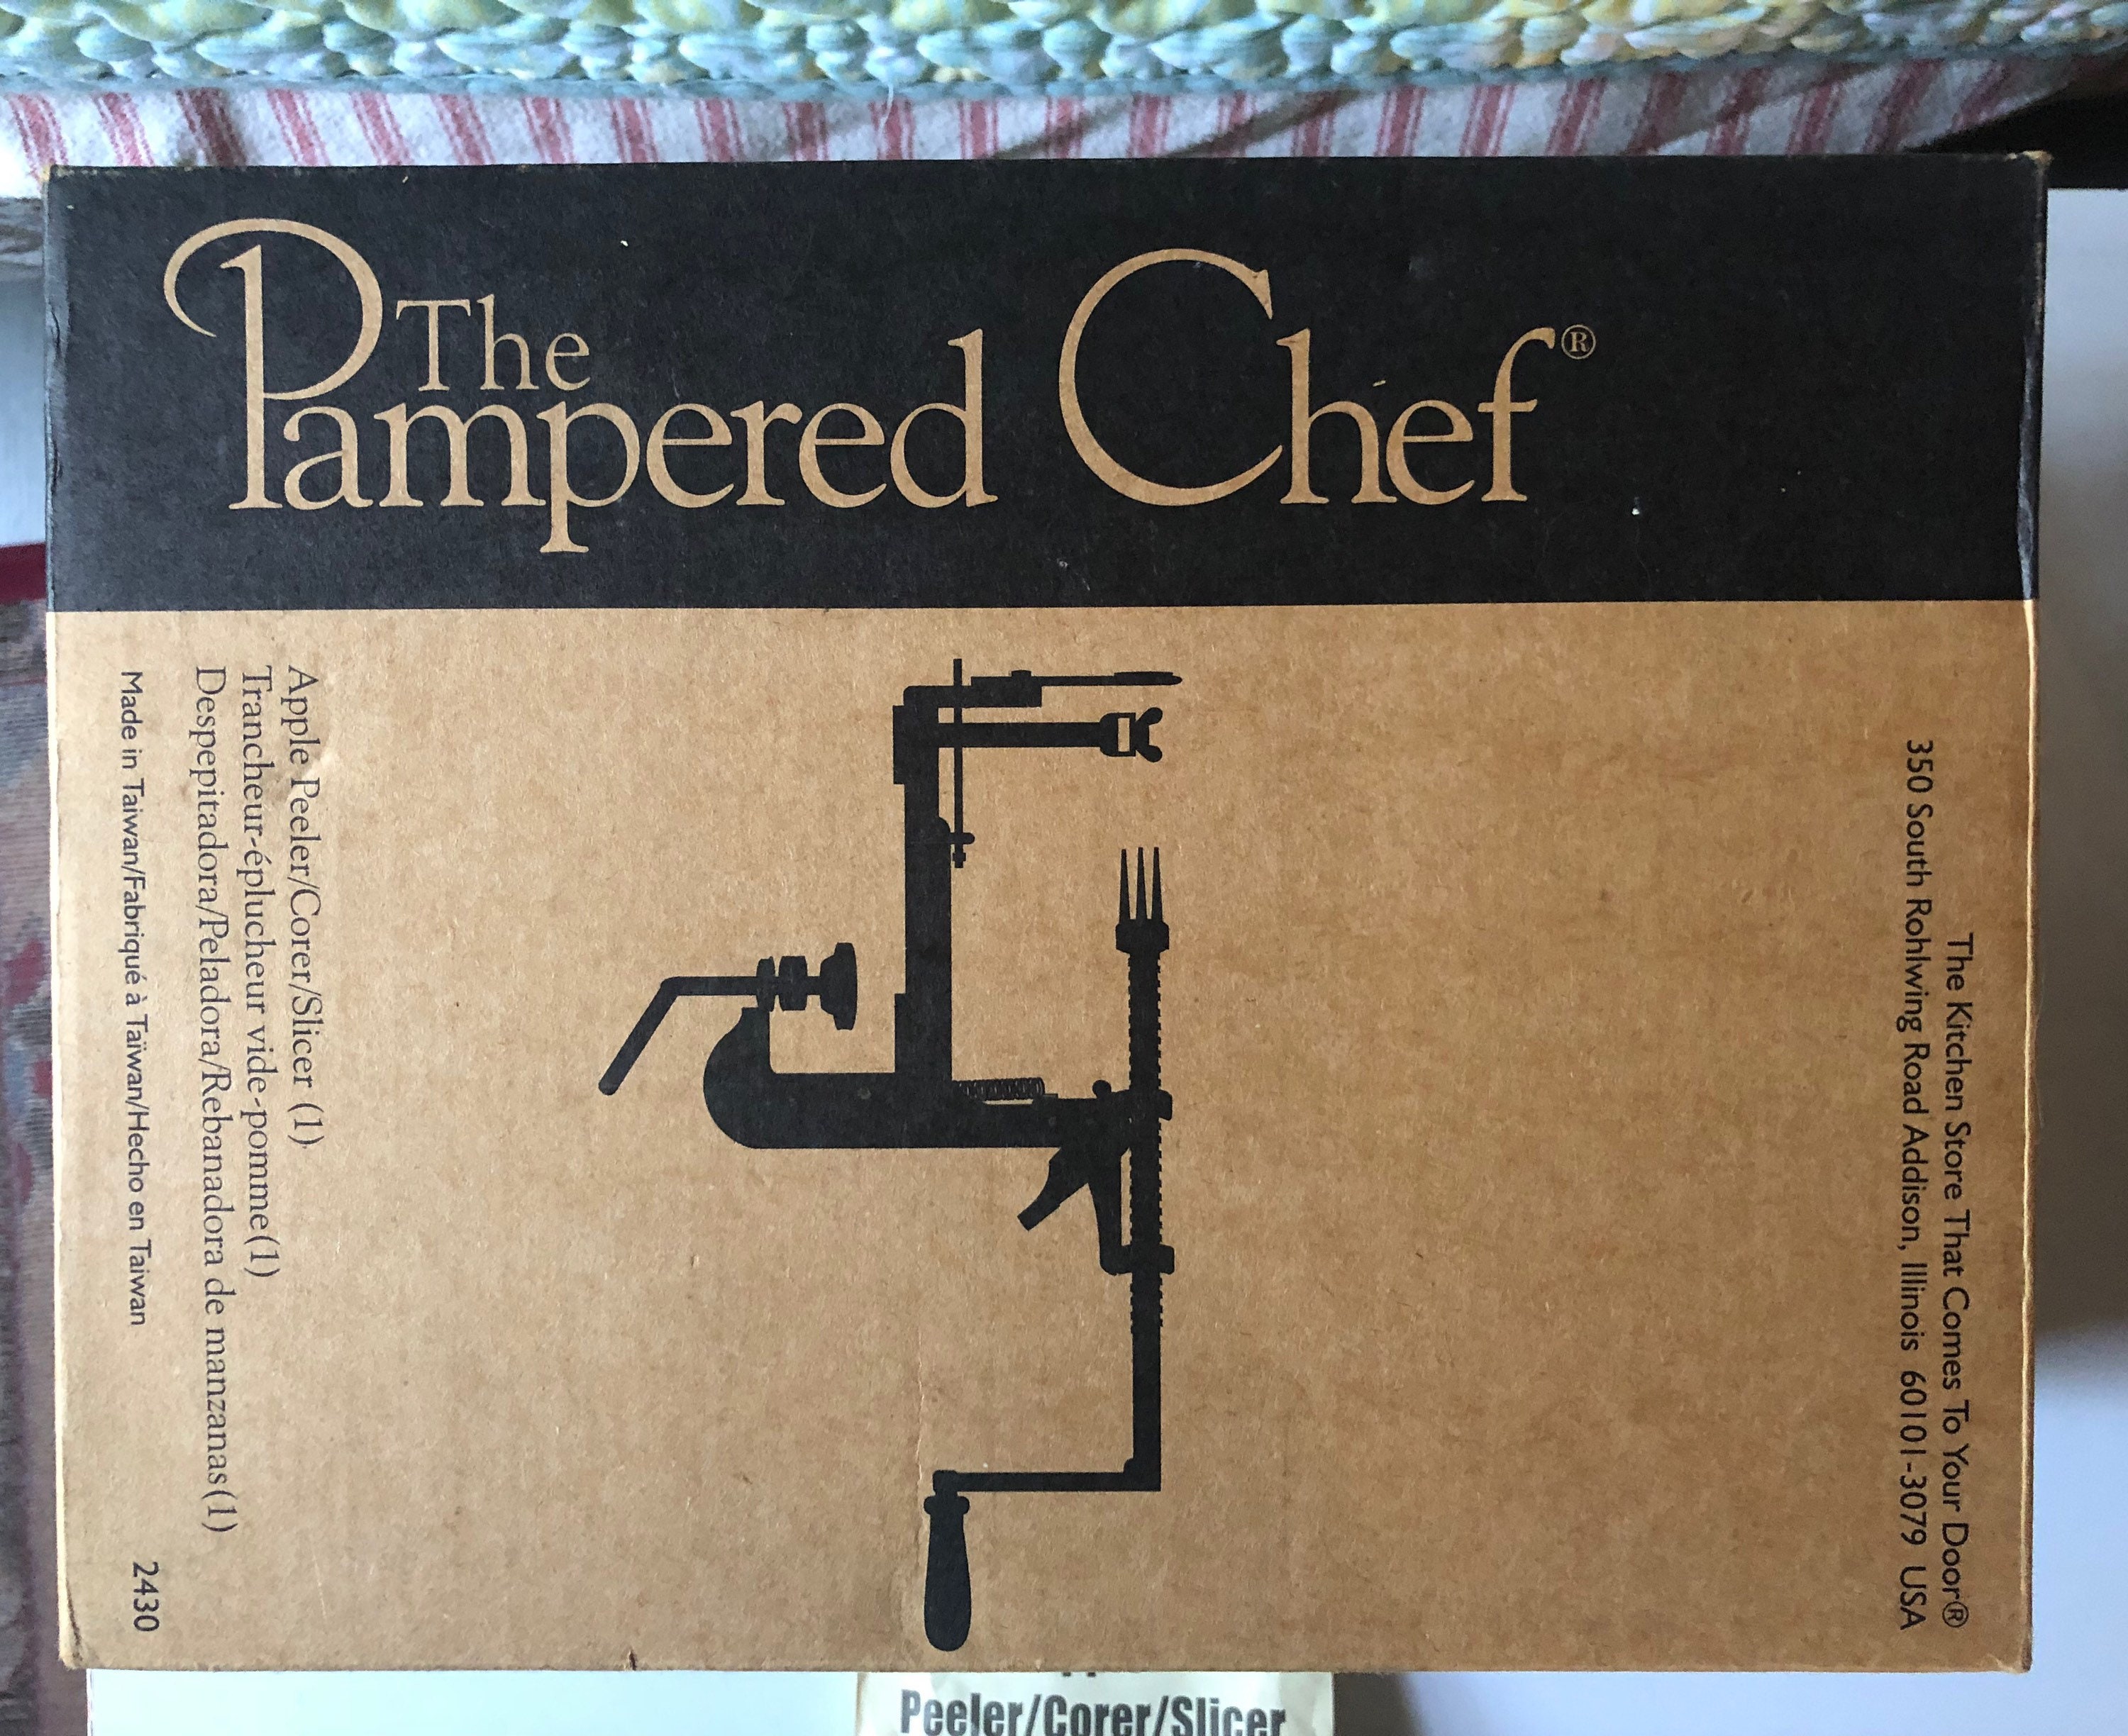  The Pampered Chef 2430 Apple Peeler, Corer, Slicer: Pampered  Chef Apple Peeler Corer Slicer: Home & Kitchen